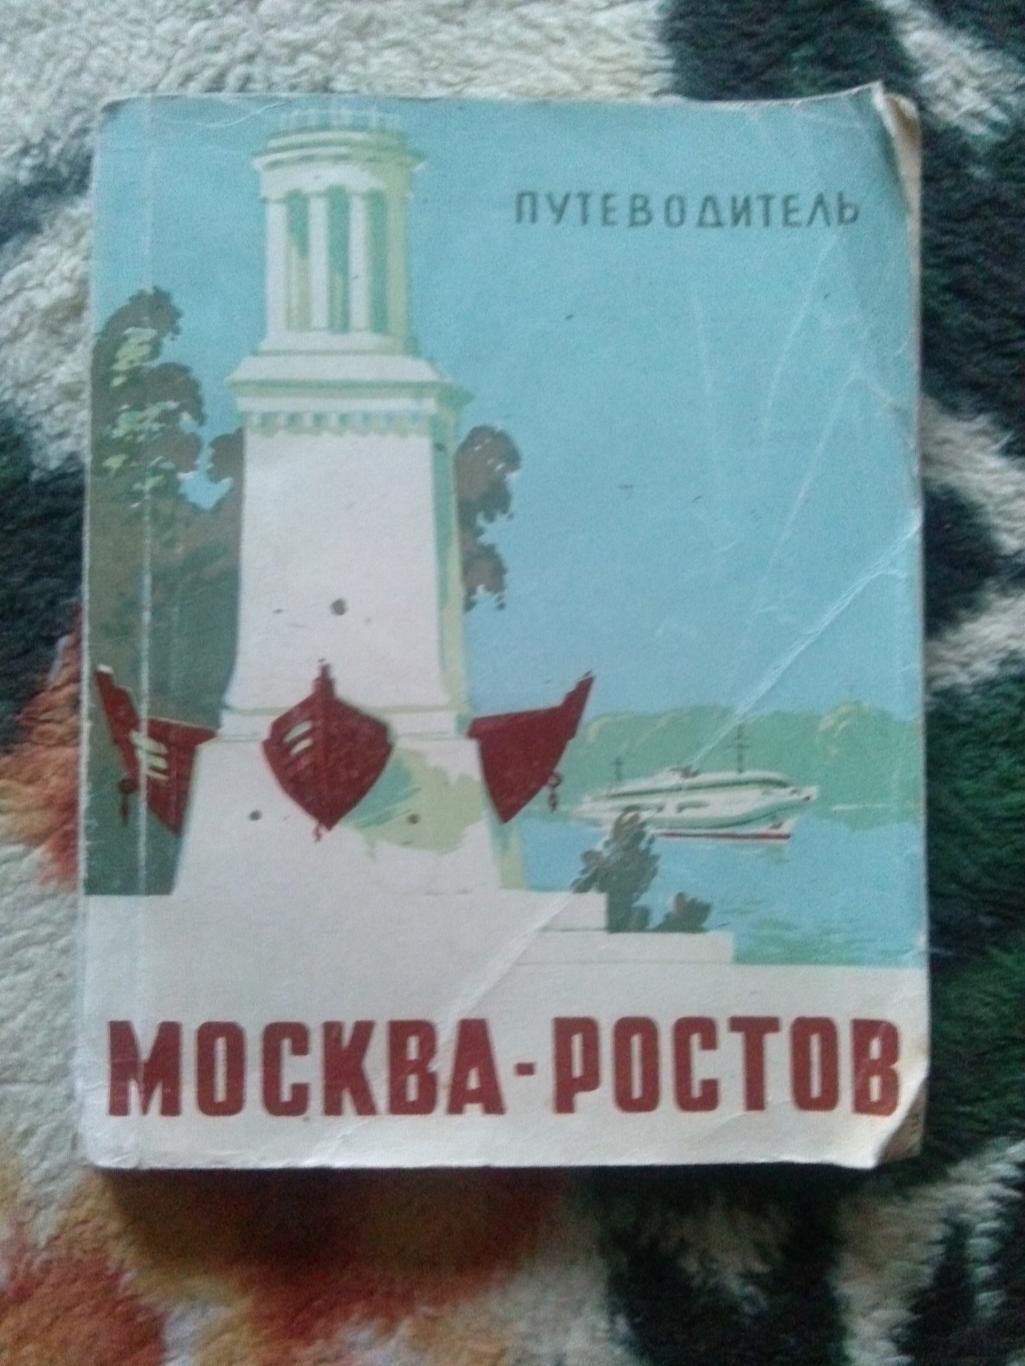 Путеводитель : Москва - Ростов 1965 г. Волго-Дон (Речной флот , транспорт)